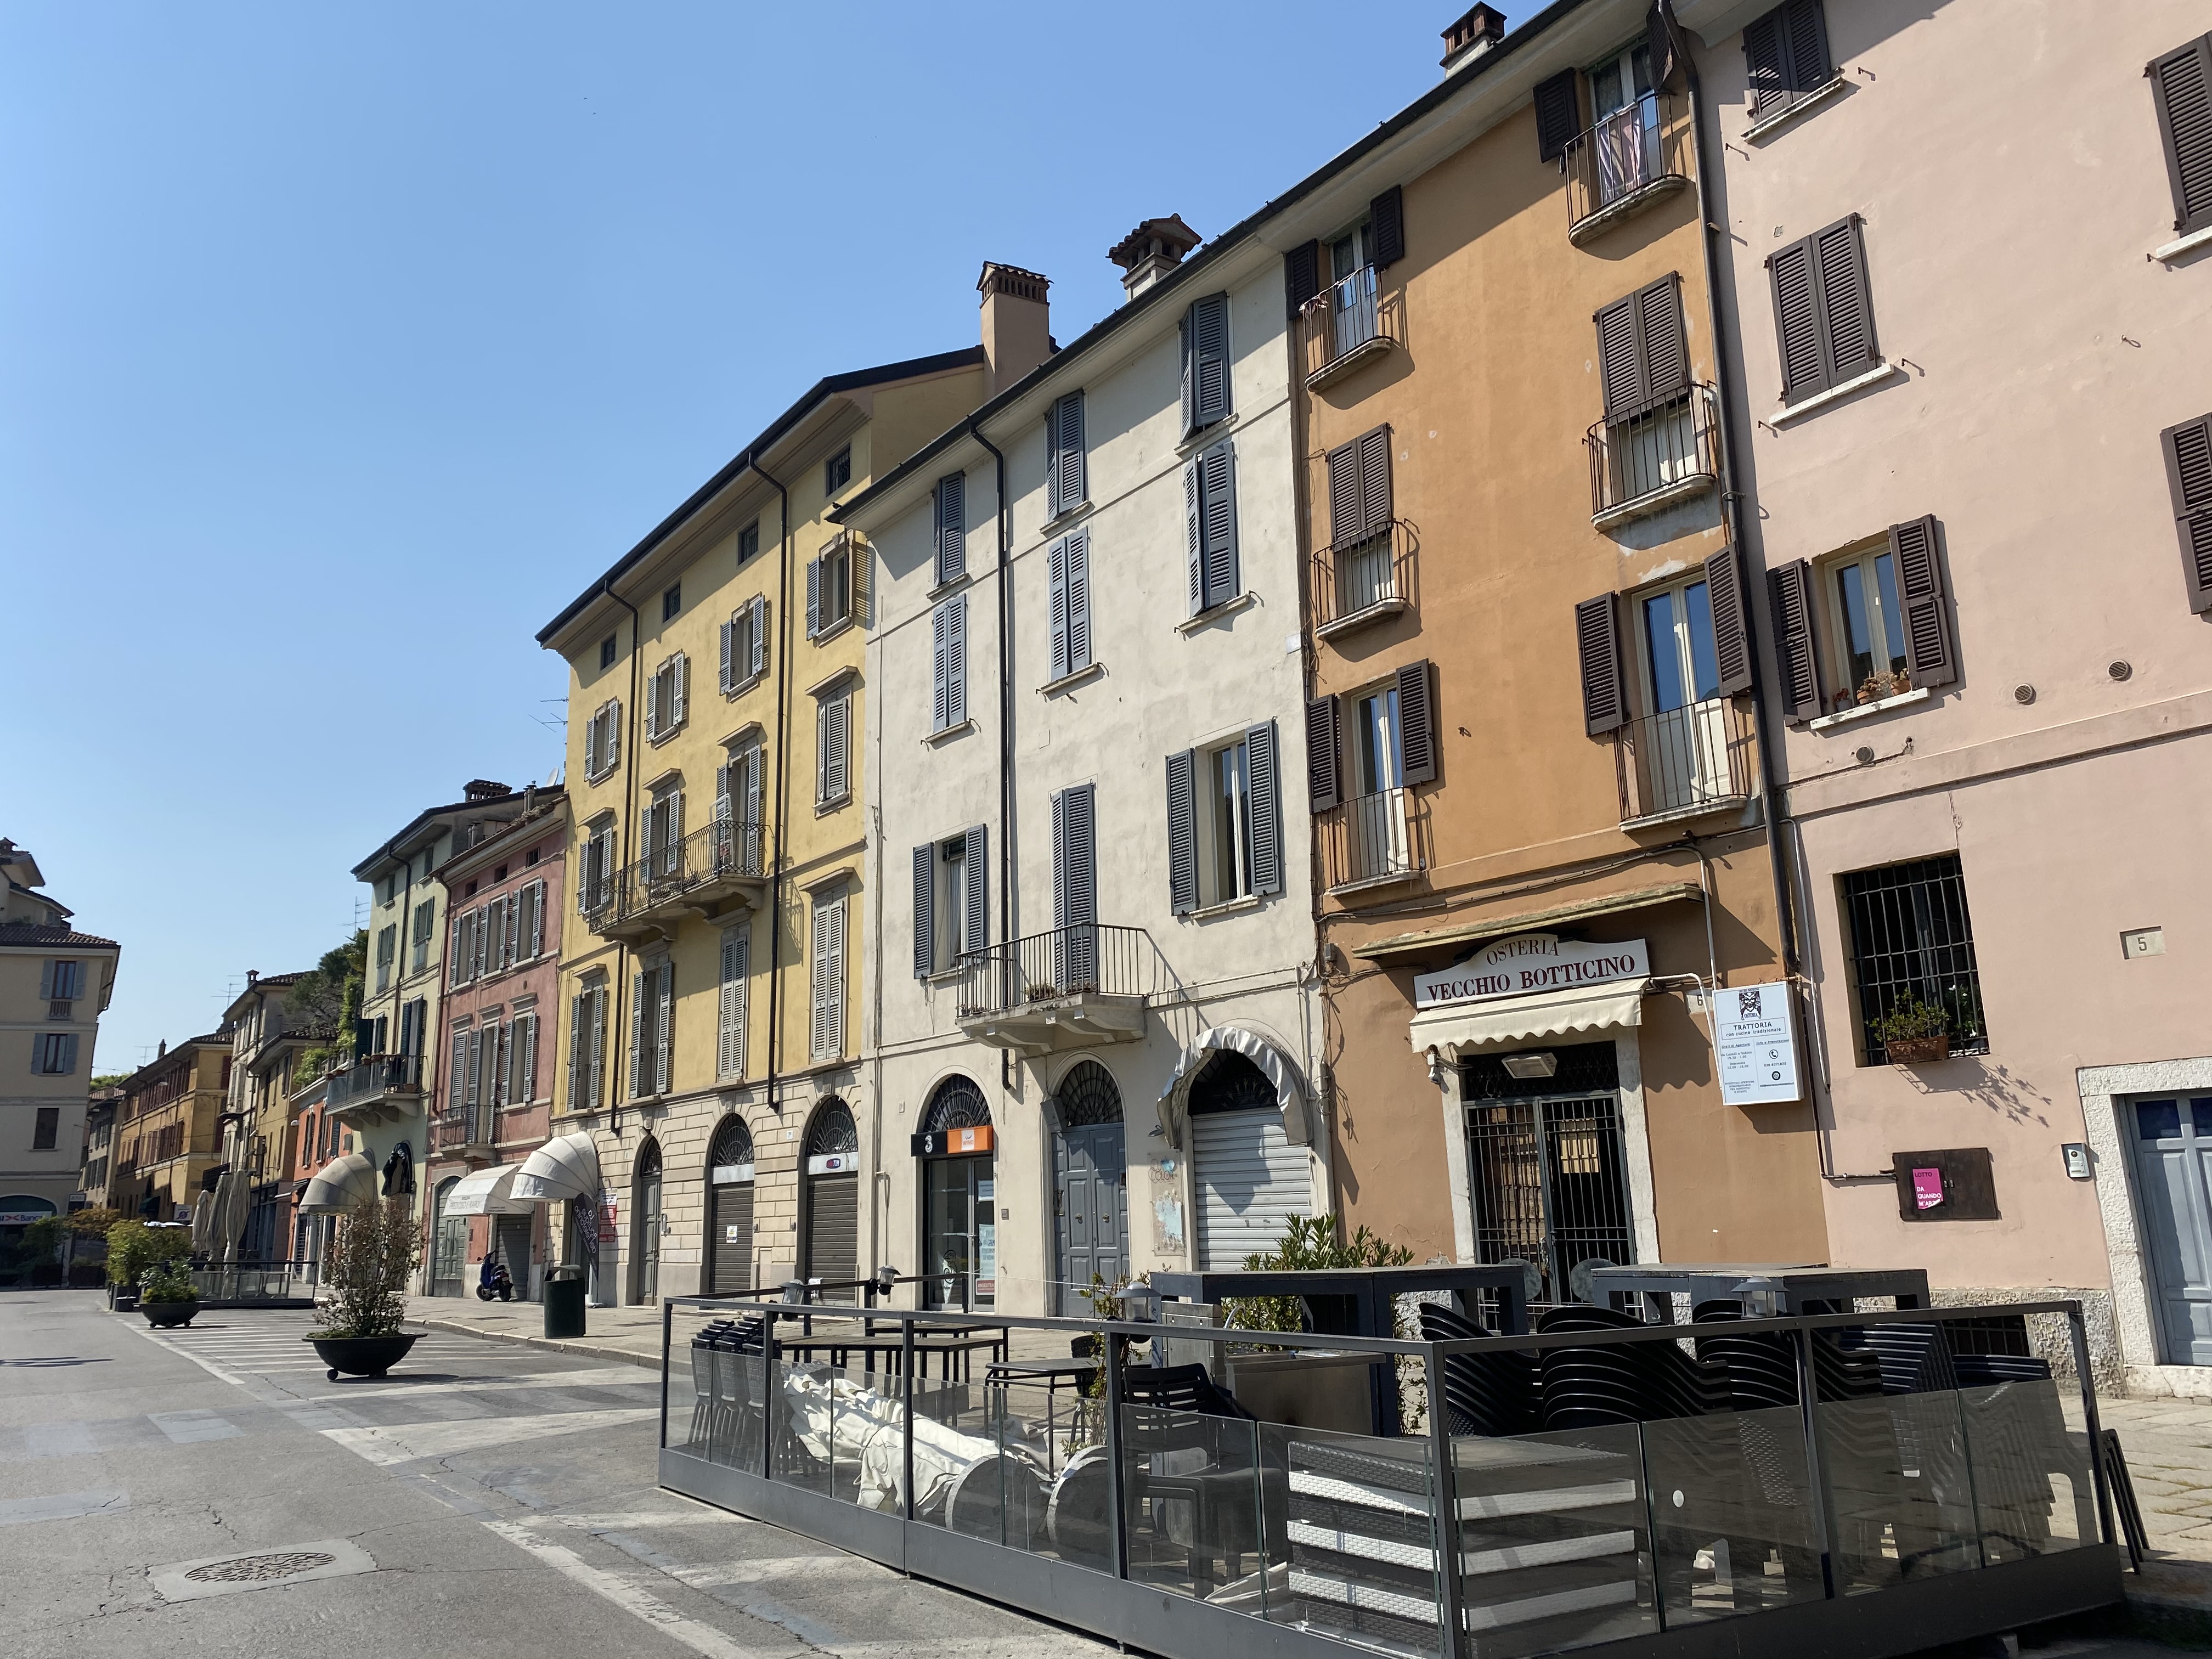 Casa in Piazzale Arnaldo, 7 (casa, in linea) - Brescia (BS)  (N.R)